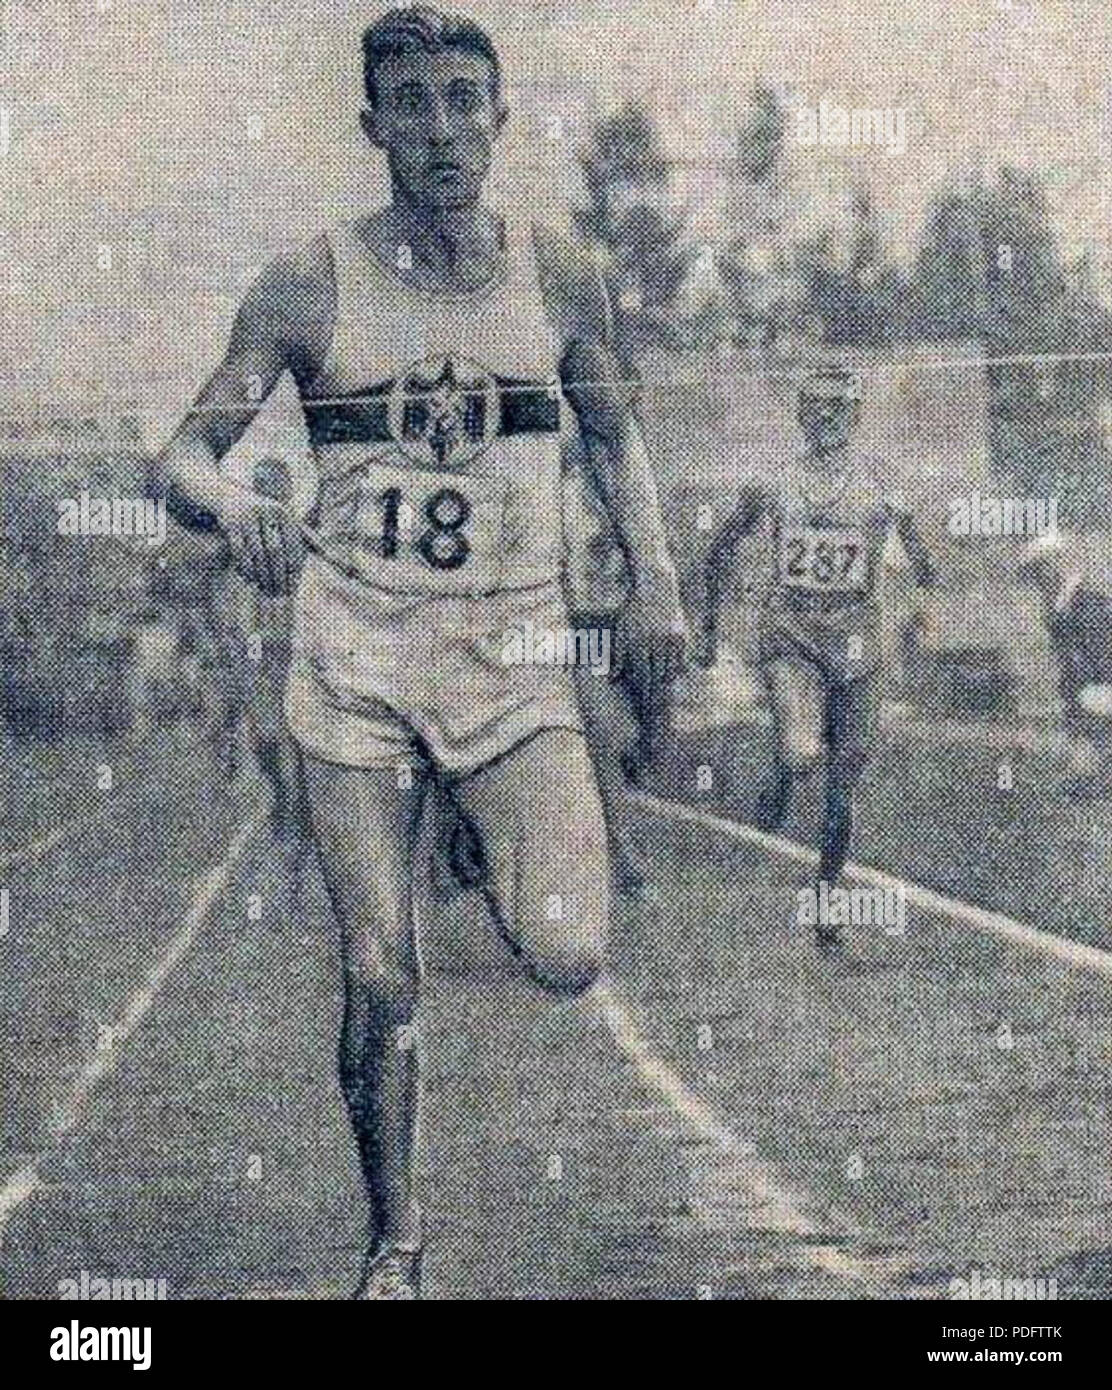 189 L'Allemand Rudolf Harbig Vainqueur du 800 mètres devant le français Jacques Lévèque (à D.), aux championnats d'Europa de 1938 à Colombes Foto Stock